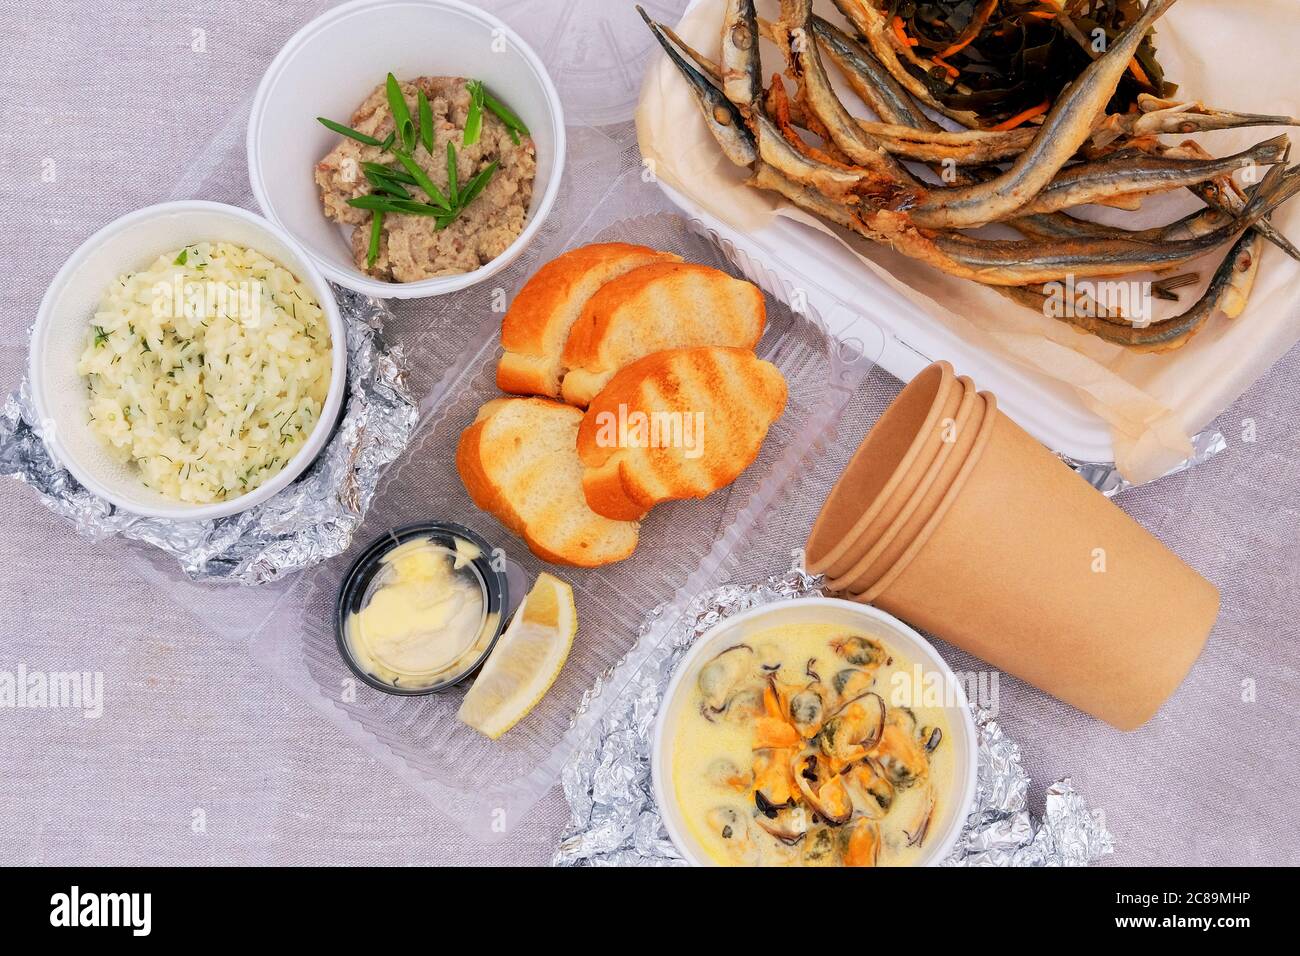 Gebratener Geruch auf einem Picknick, Nahaufnahme. Kleine Fische, Zitrone, Seeskohl, Croutons, Reis, Hackfleisch und Muscheln. Blick von oben. Stockfoto